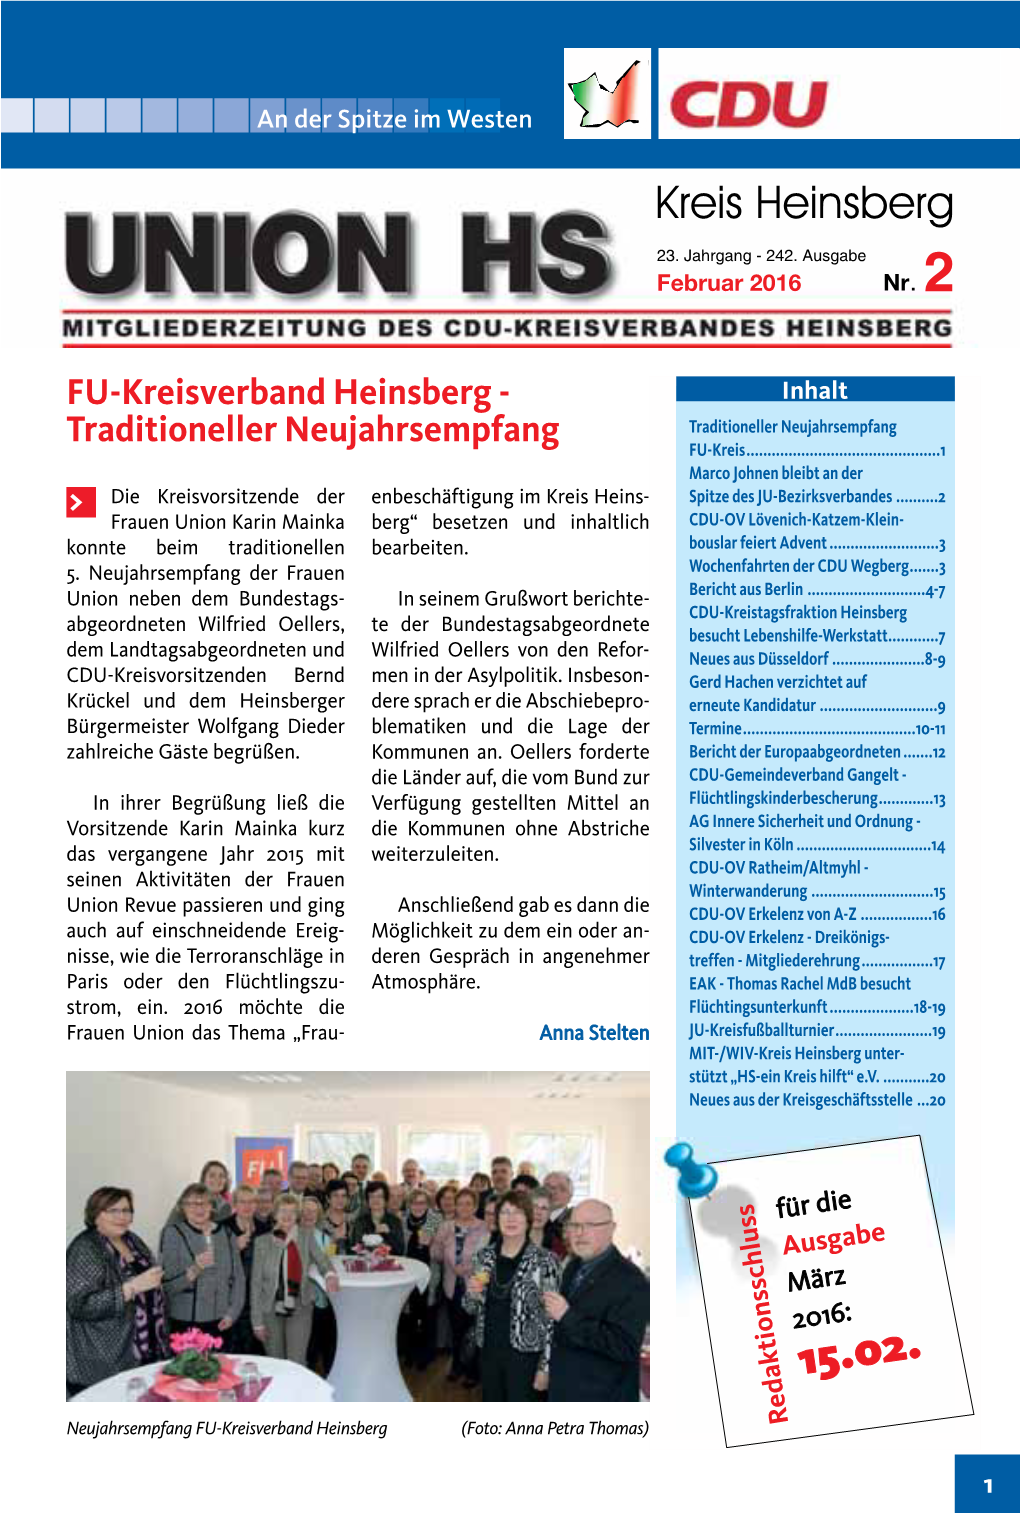 FU-Kreisverband Heinsberg - Inhalt Traditioneller Neujahrsempfang Traditioneller Neujahrsempfang FU-Kreis